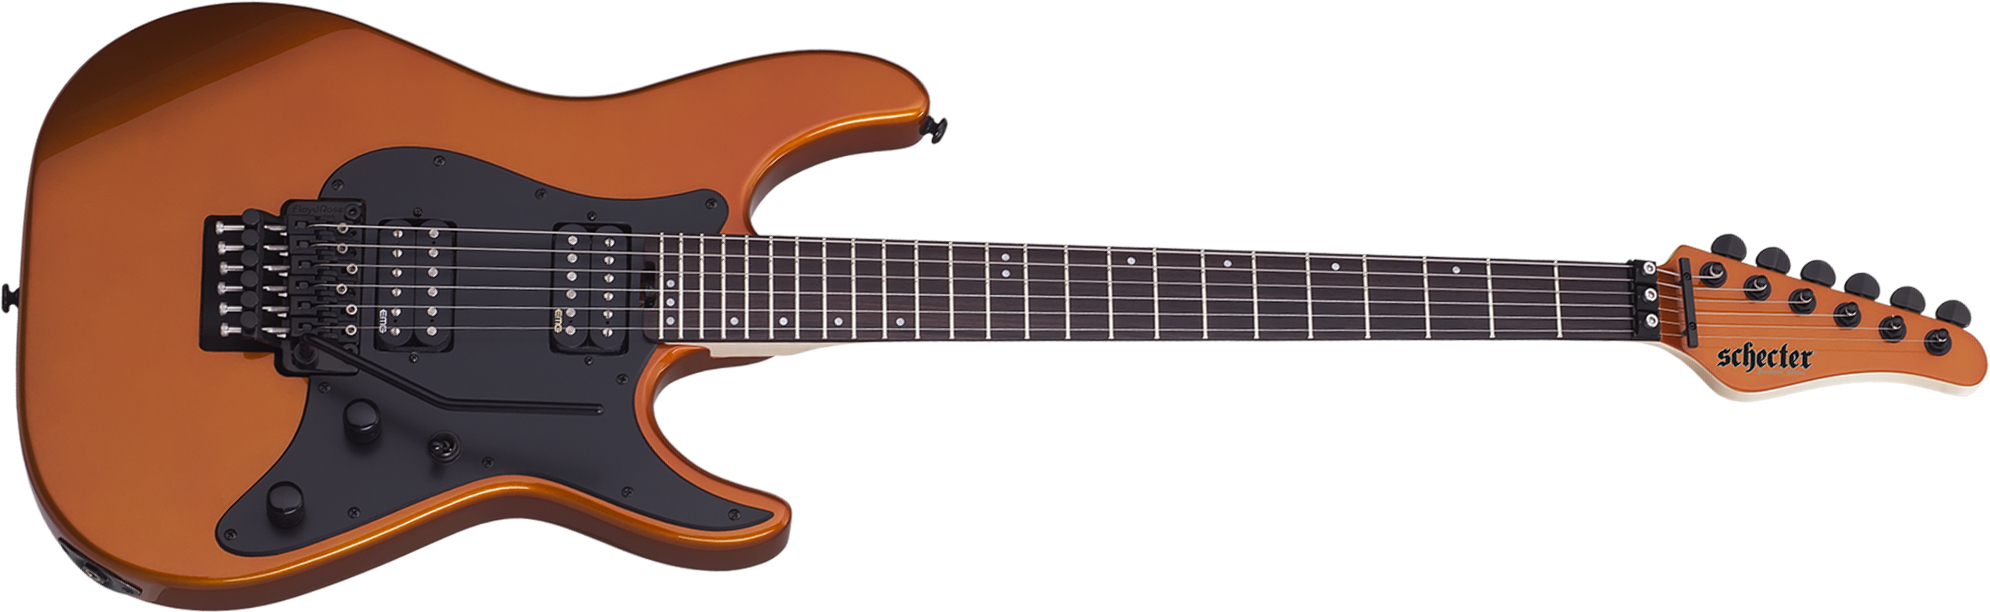 Schecter Sun Valley Super Shredder Fr 2h Emg Rw - Lambo Orange - Televorm elektrische gitaar - Main picture